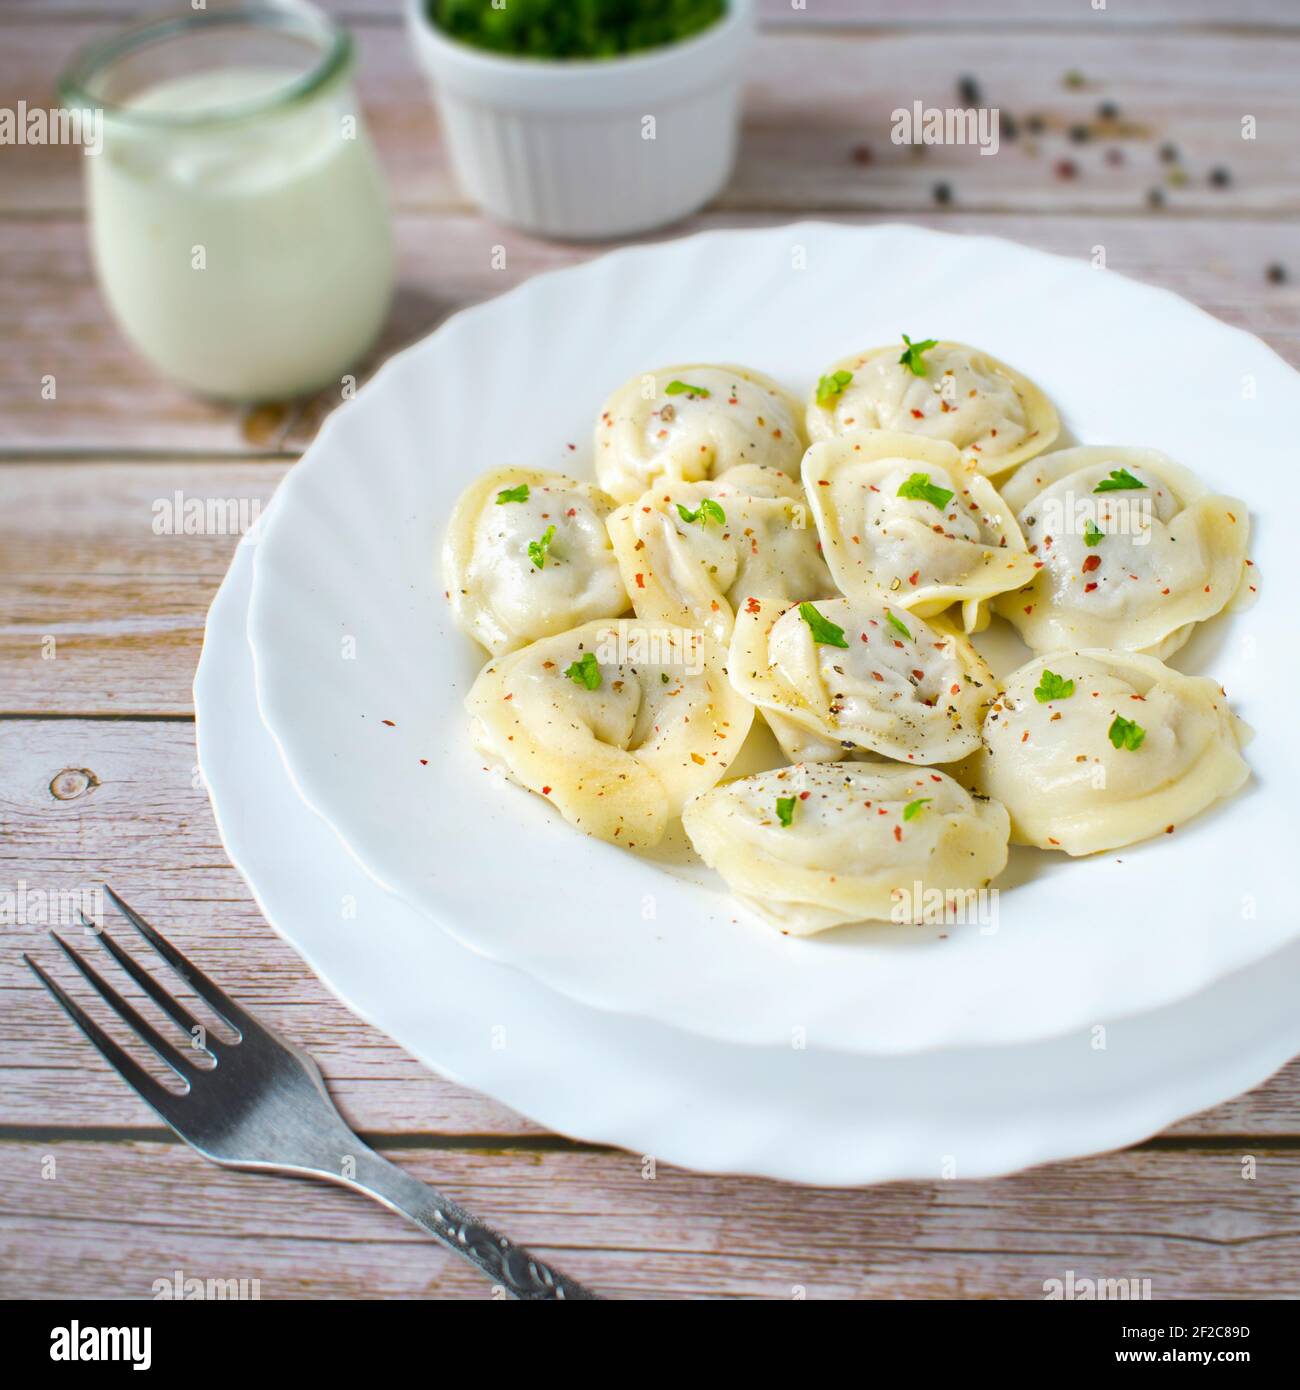 Dumplings pielmieni - ein traditionelles Gericht der russischen Küche. Stockfoto